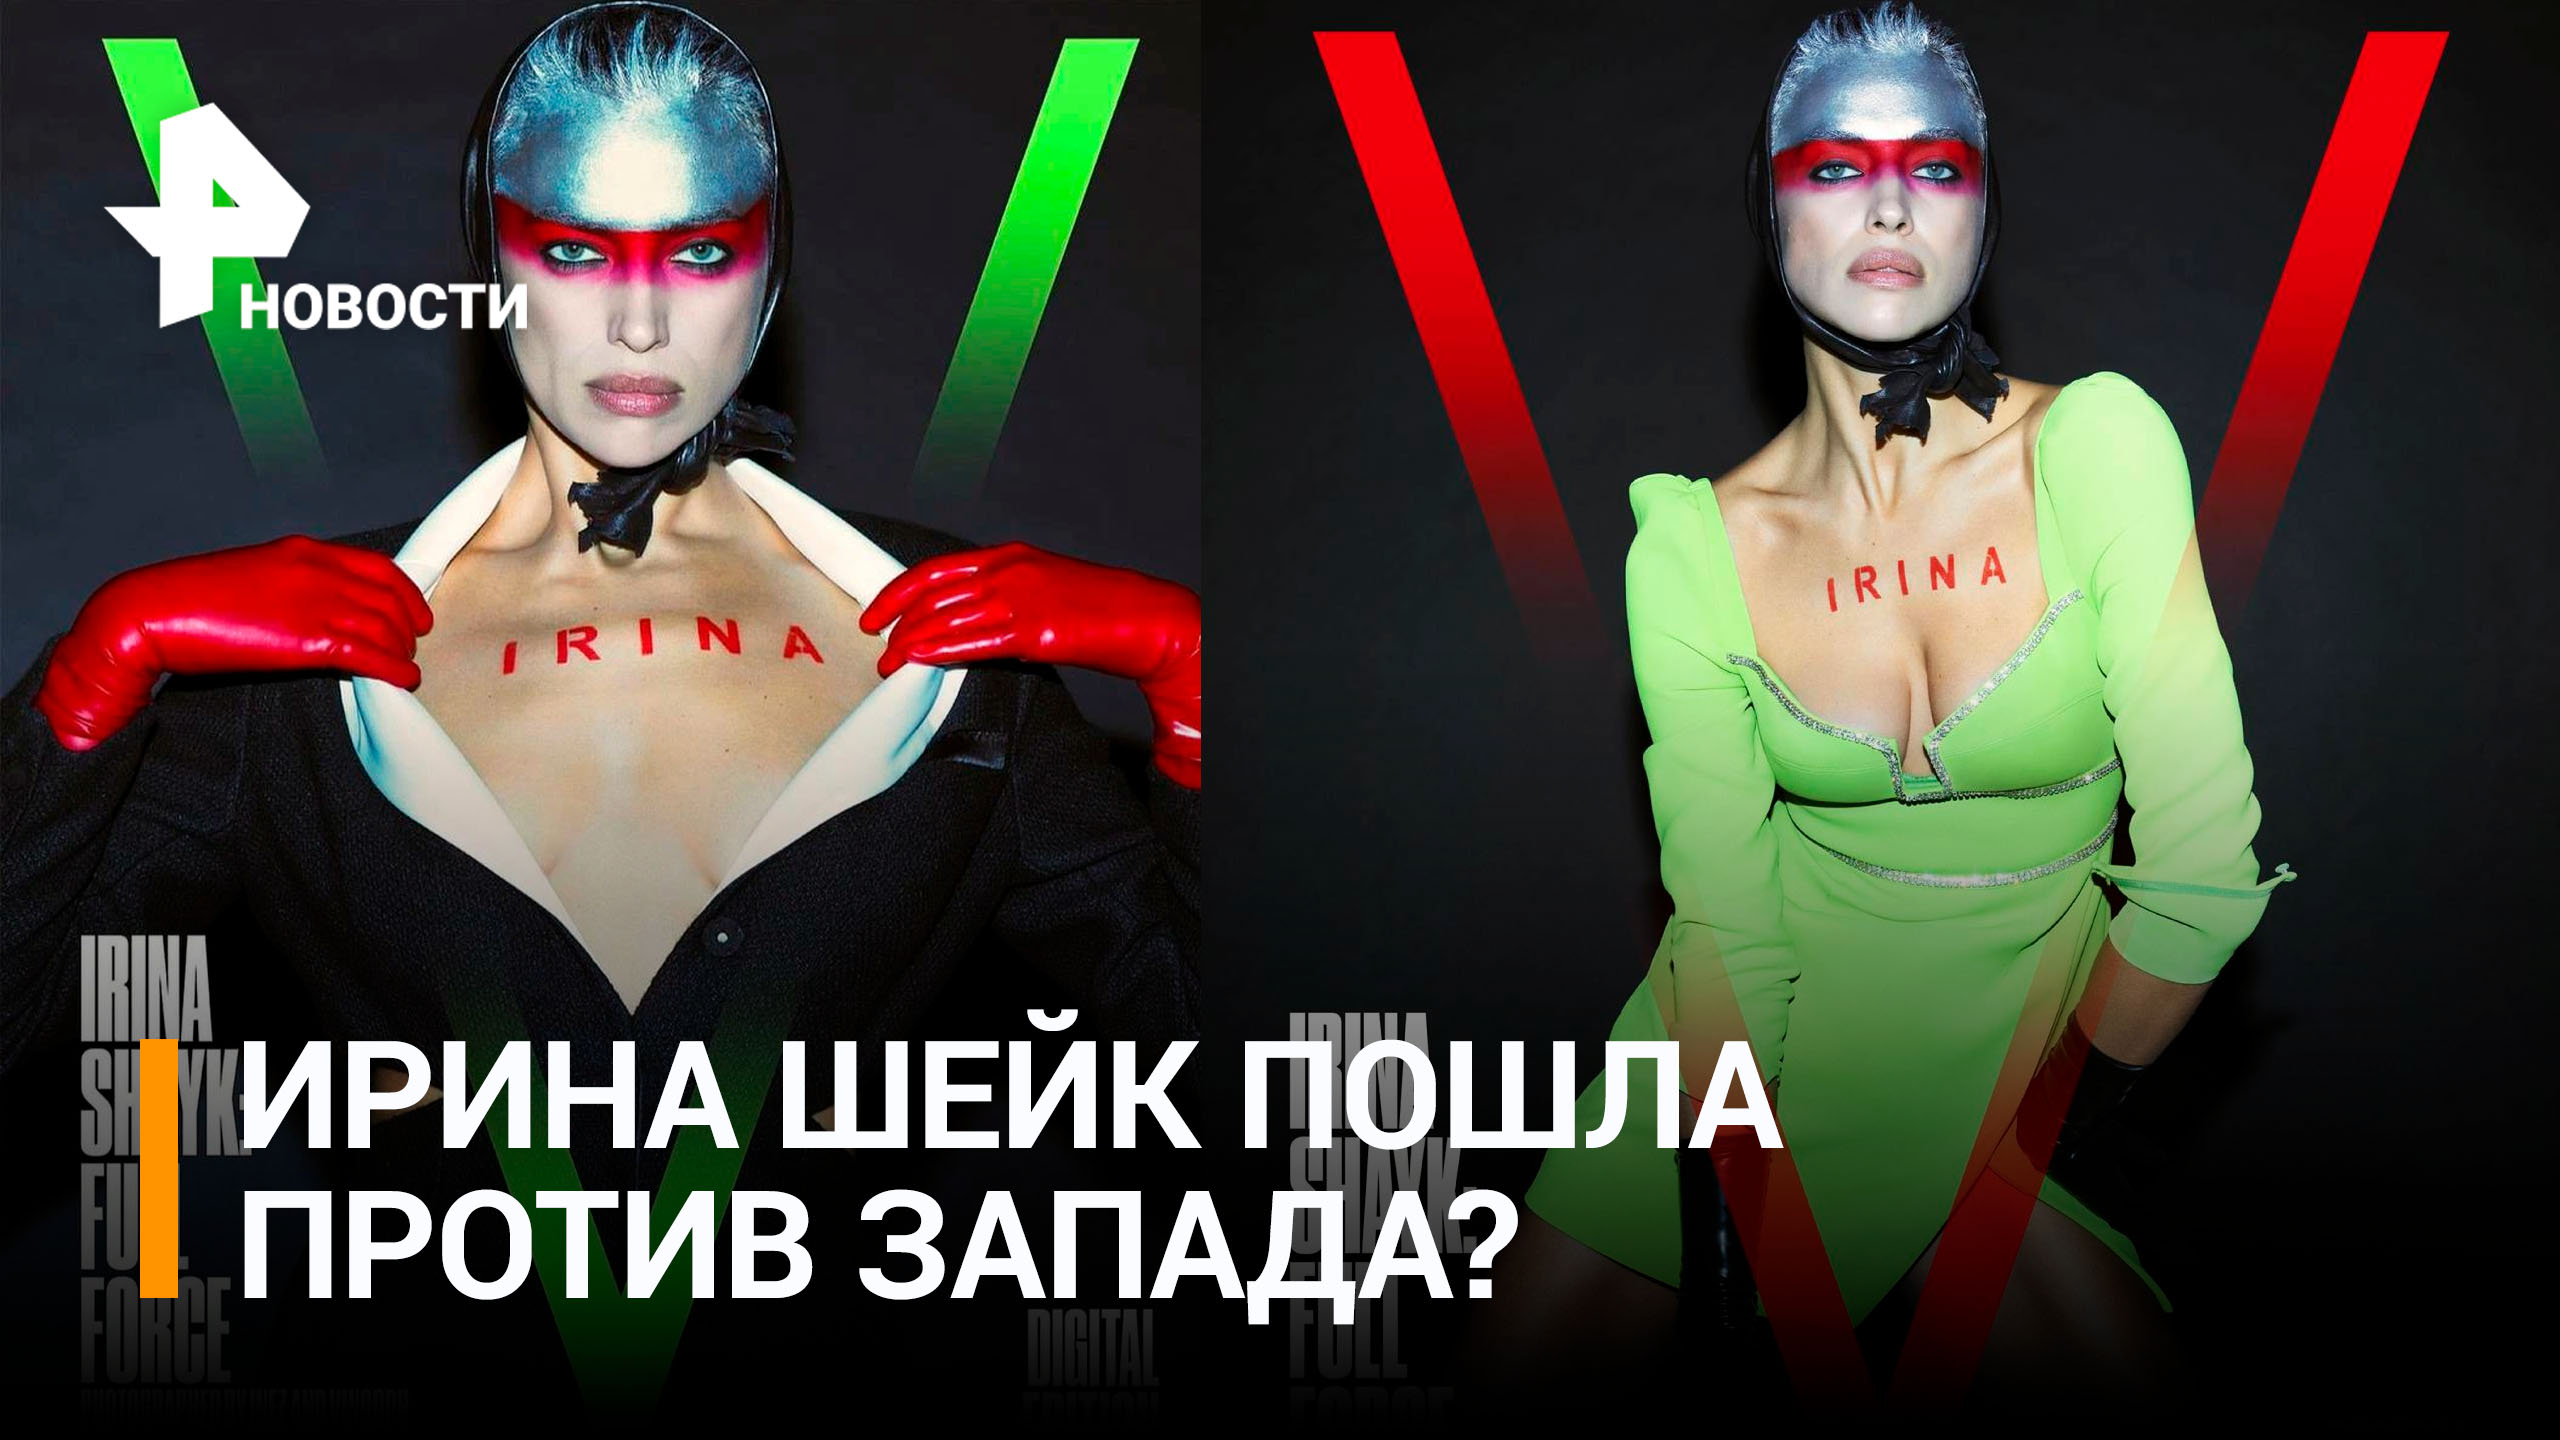 Супермодель Ирину Шейк затравили за букву V на обложке журнала / РЕН Новости